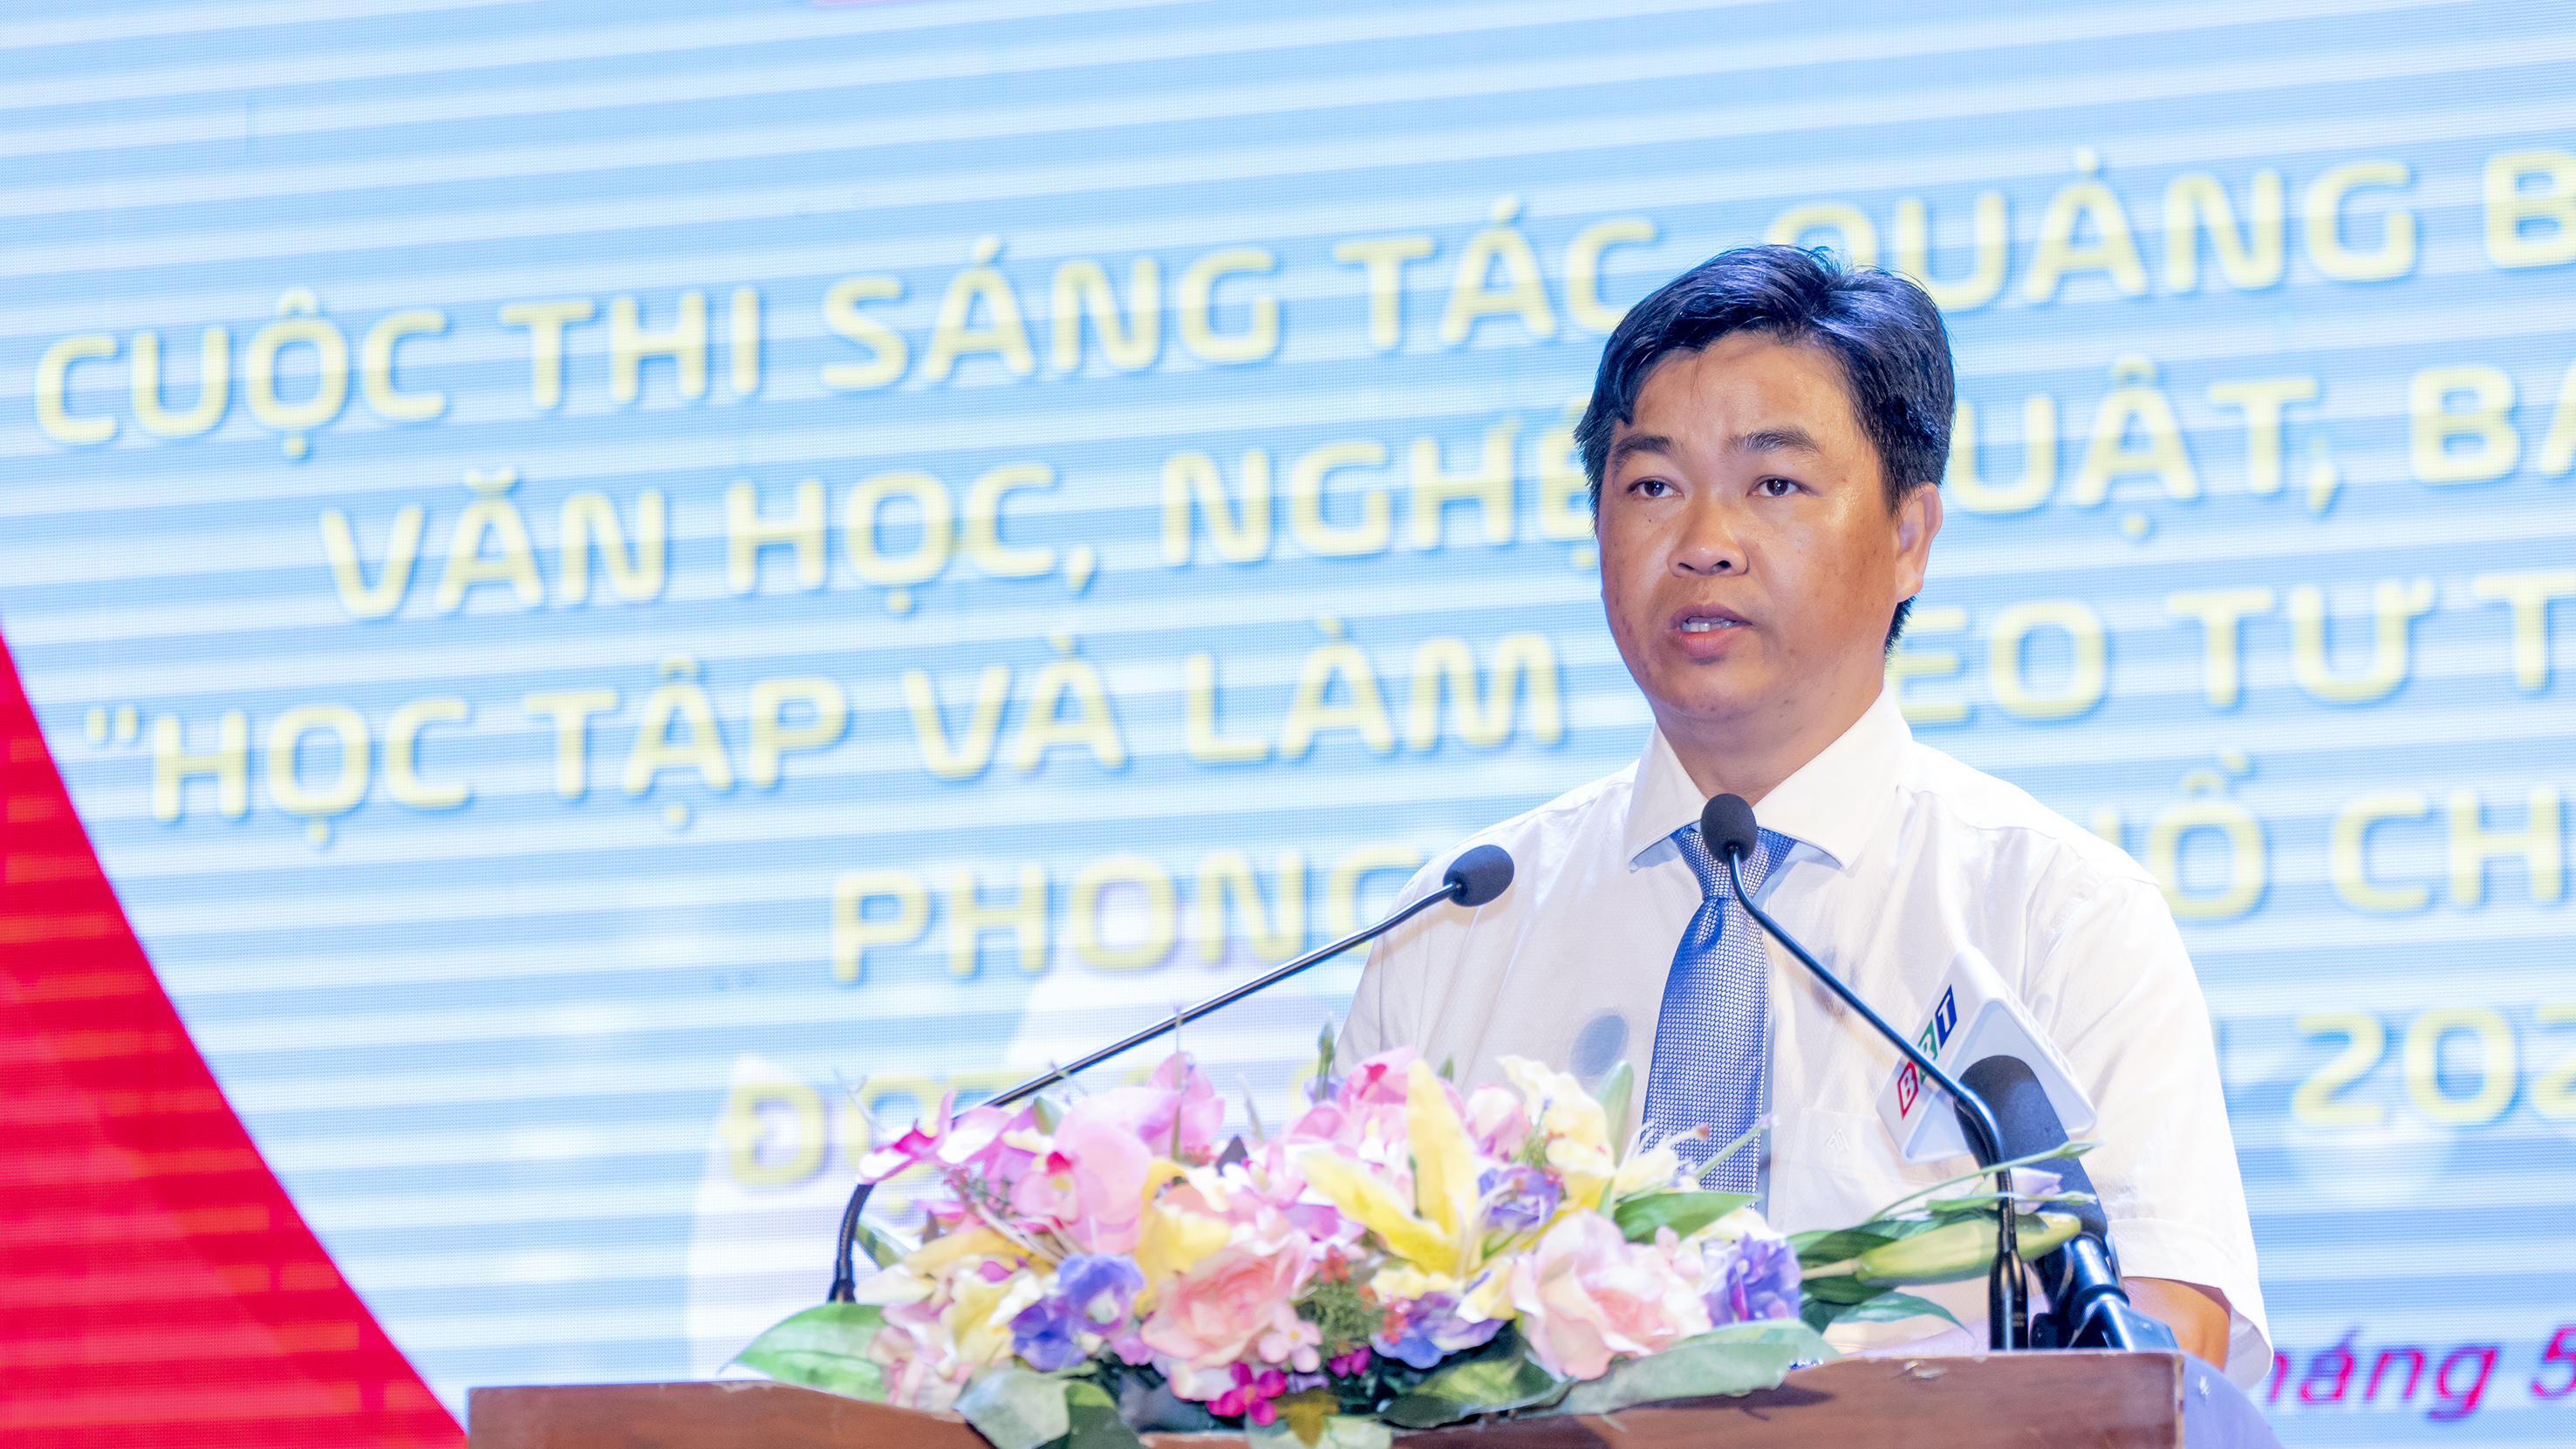 Ông Lê Văn Minh, Tỉnh ủy viên, Phó Trưởng Ban Tuyên giáo Tỉnh ủy trình bày báo cáo kết quả đợt 1 Cuộc thi sáng tác, quảng bá các tác phẩm văn học, nghệ thuật, báo chí về chủ đề 